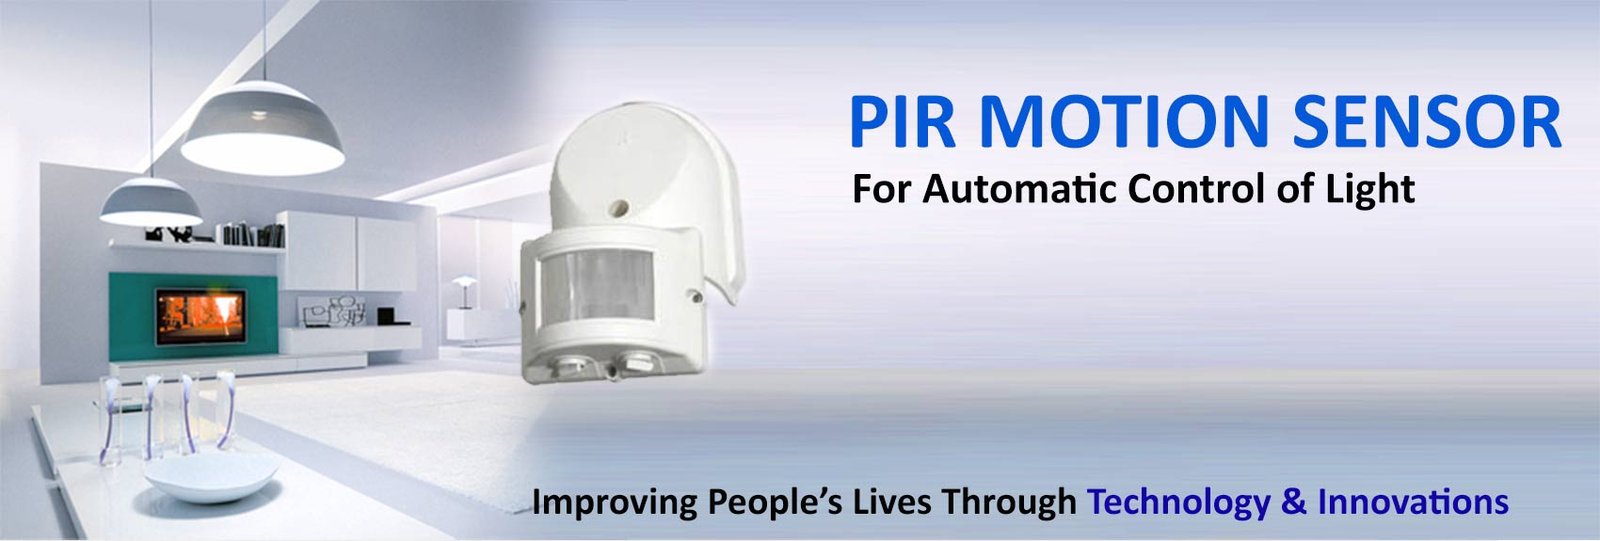 Dealer of PIR Motion Sensors